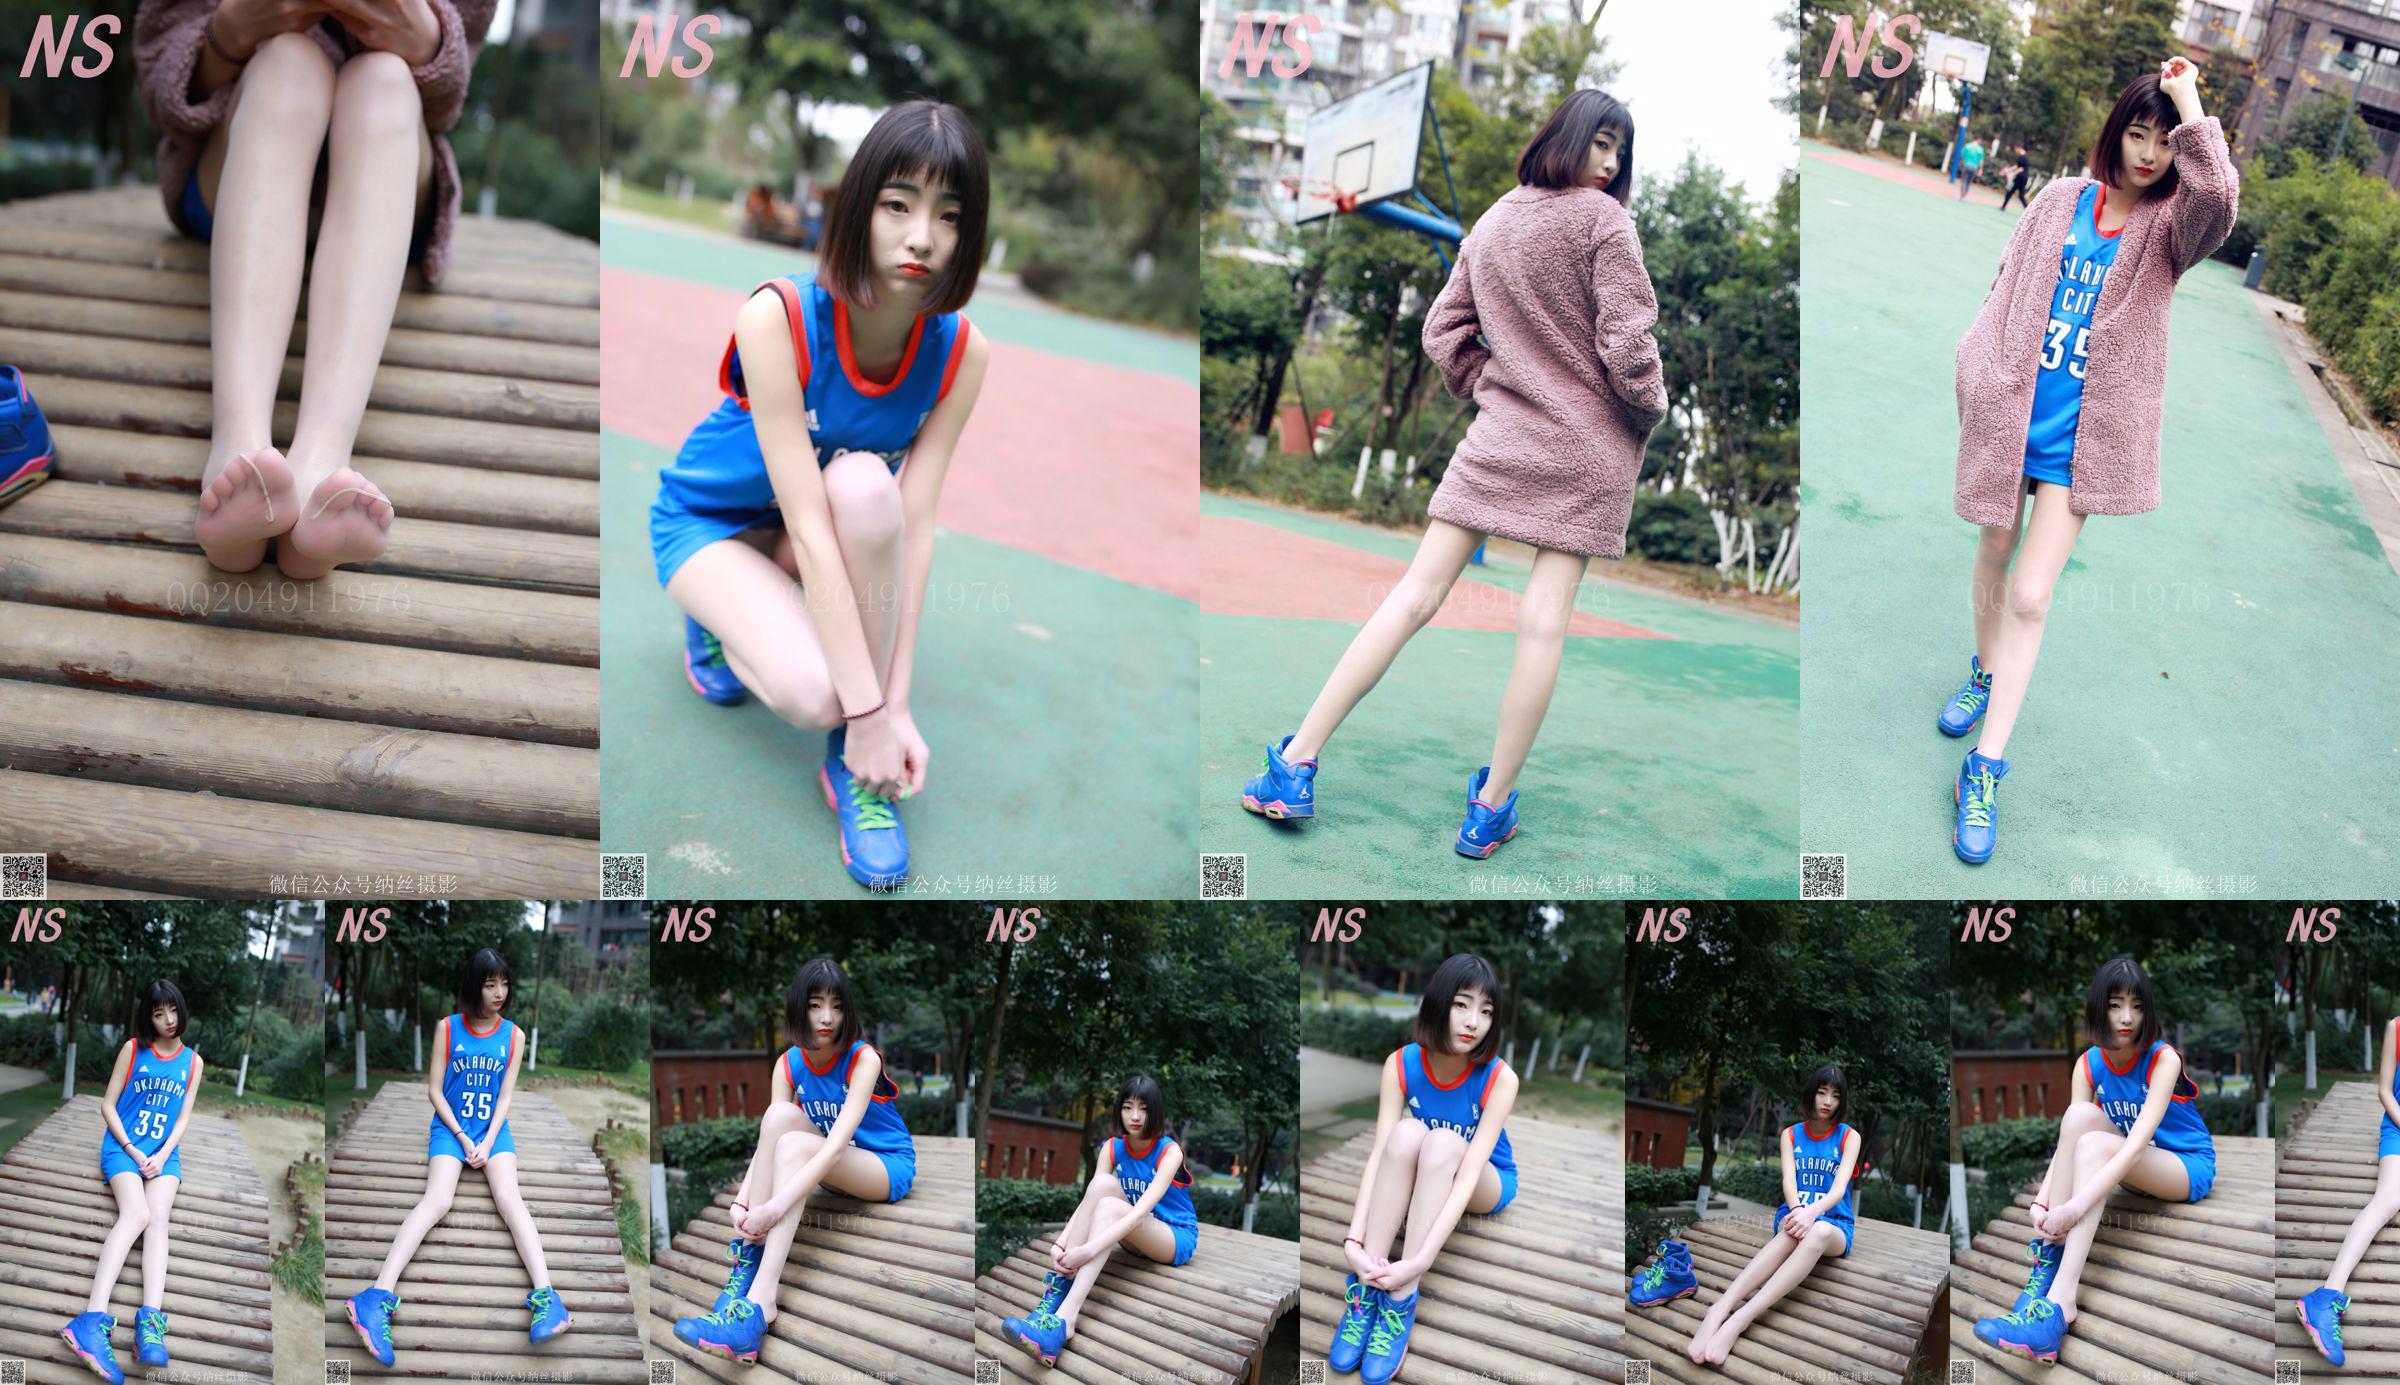 Chen Yujie "Basketball Girl" [Nasi Photography] NO.107 No.a44a3f Page 1